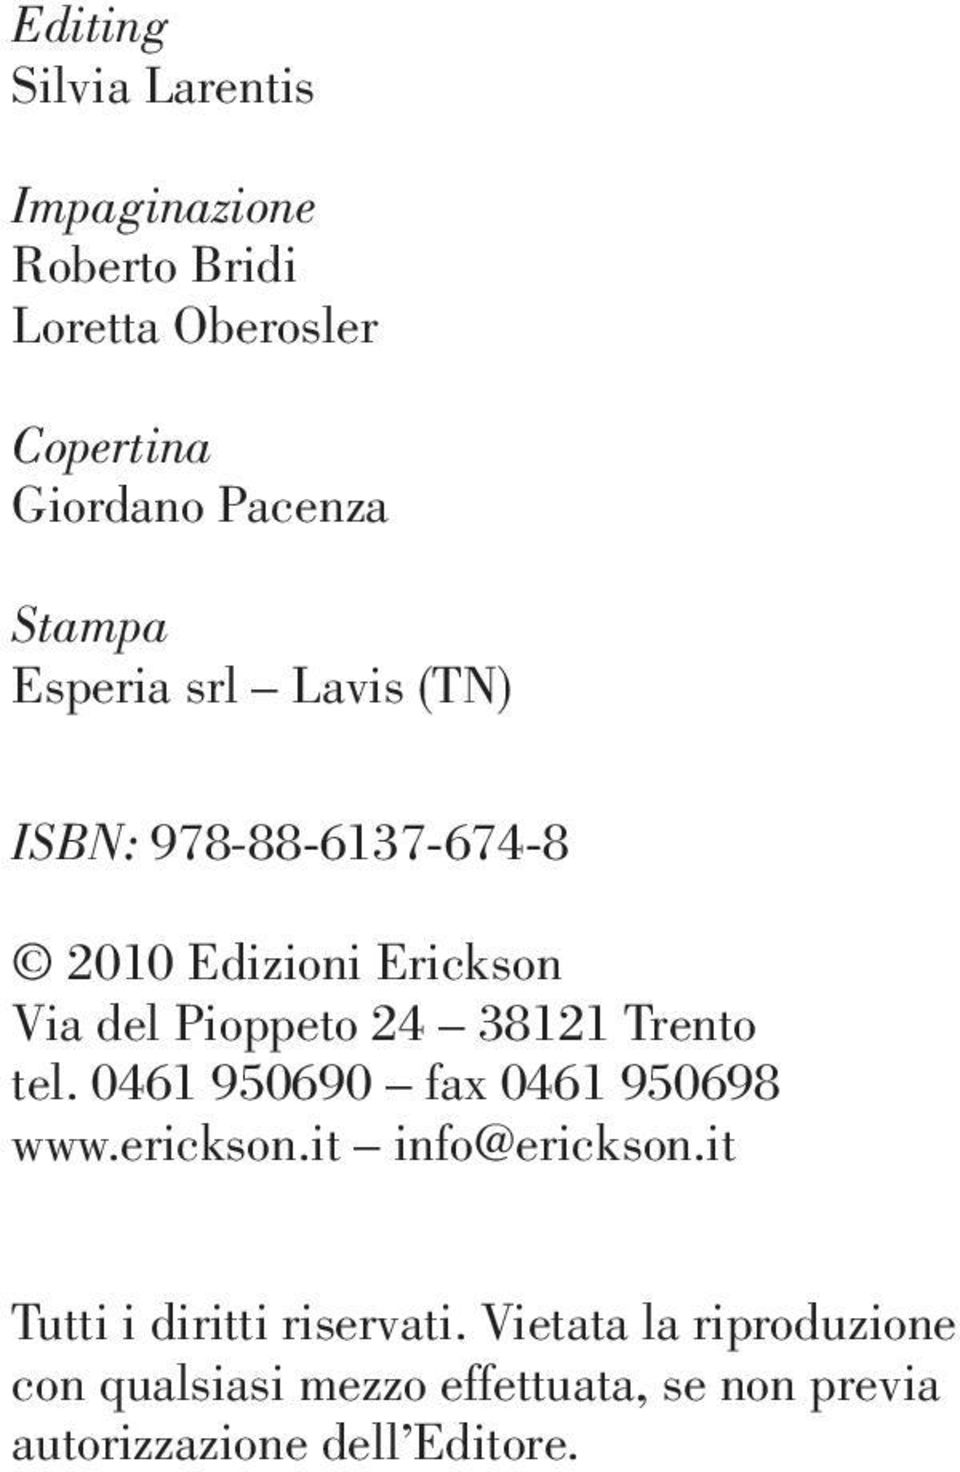 38121 Trento tel. 0461 950690 fax 0461 950698 www.erickson.it info@erickson.